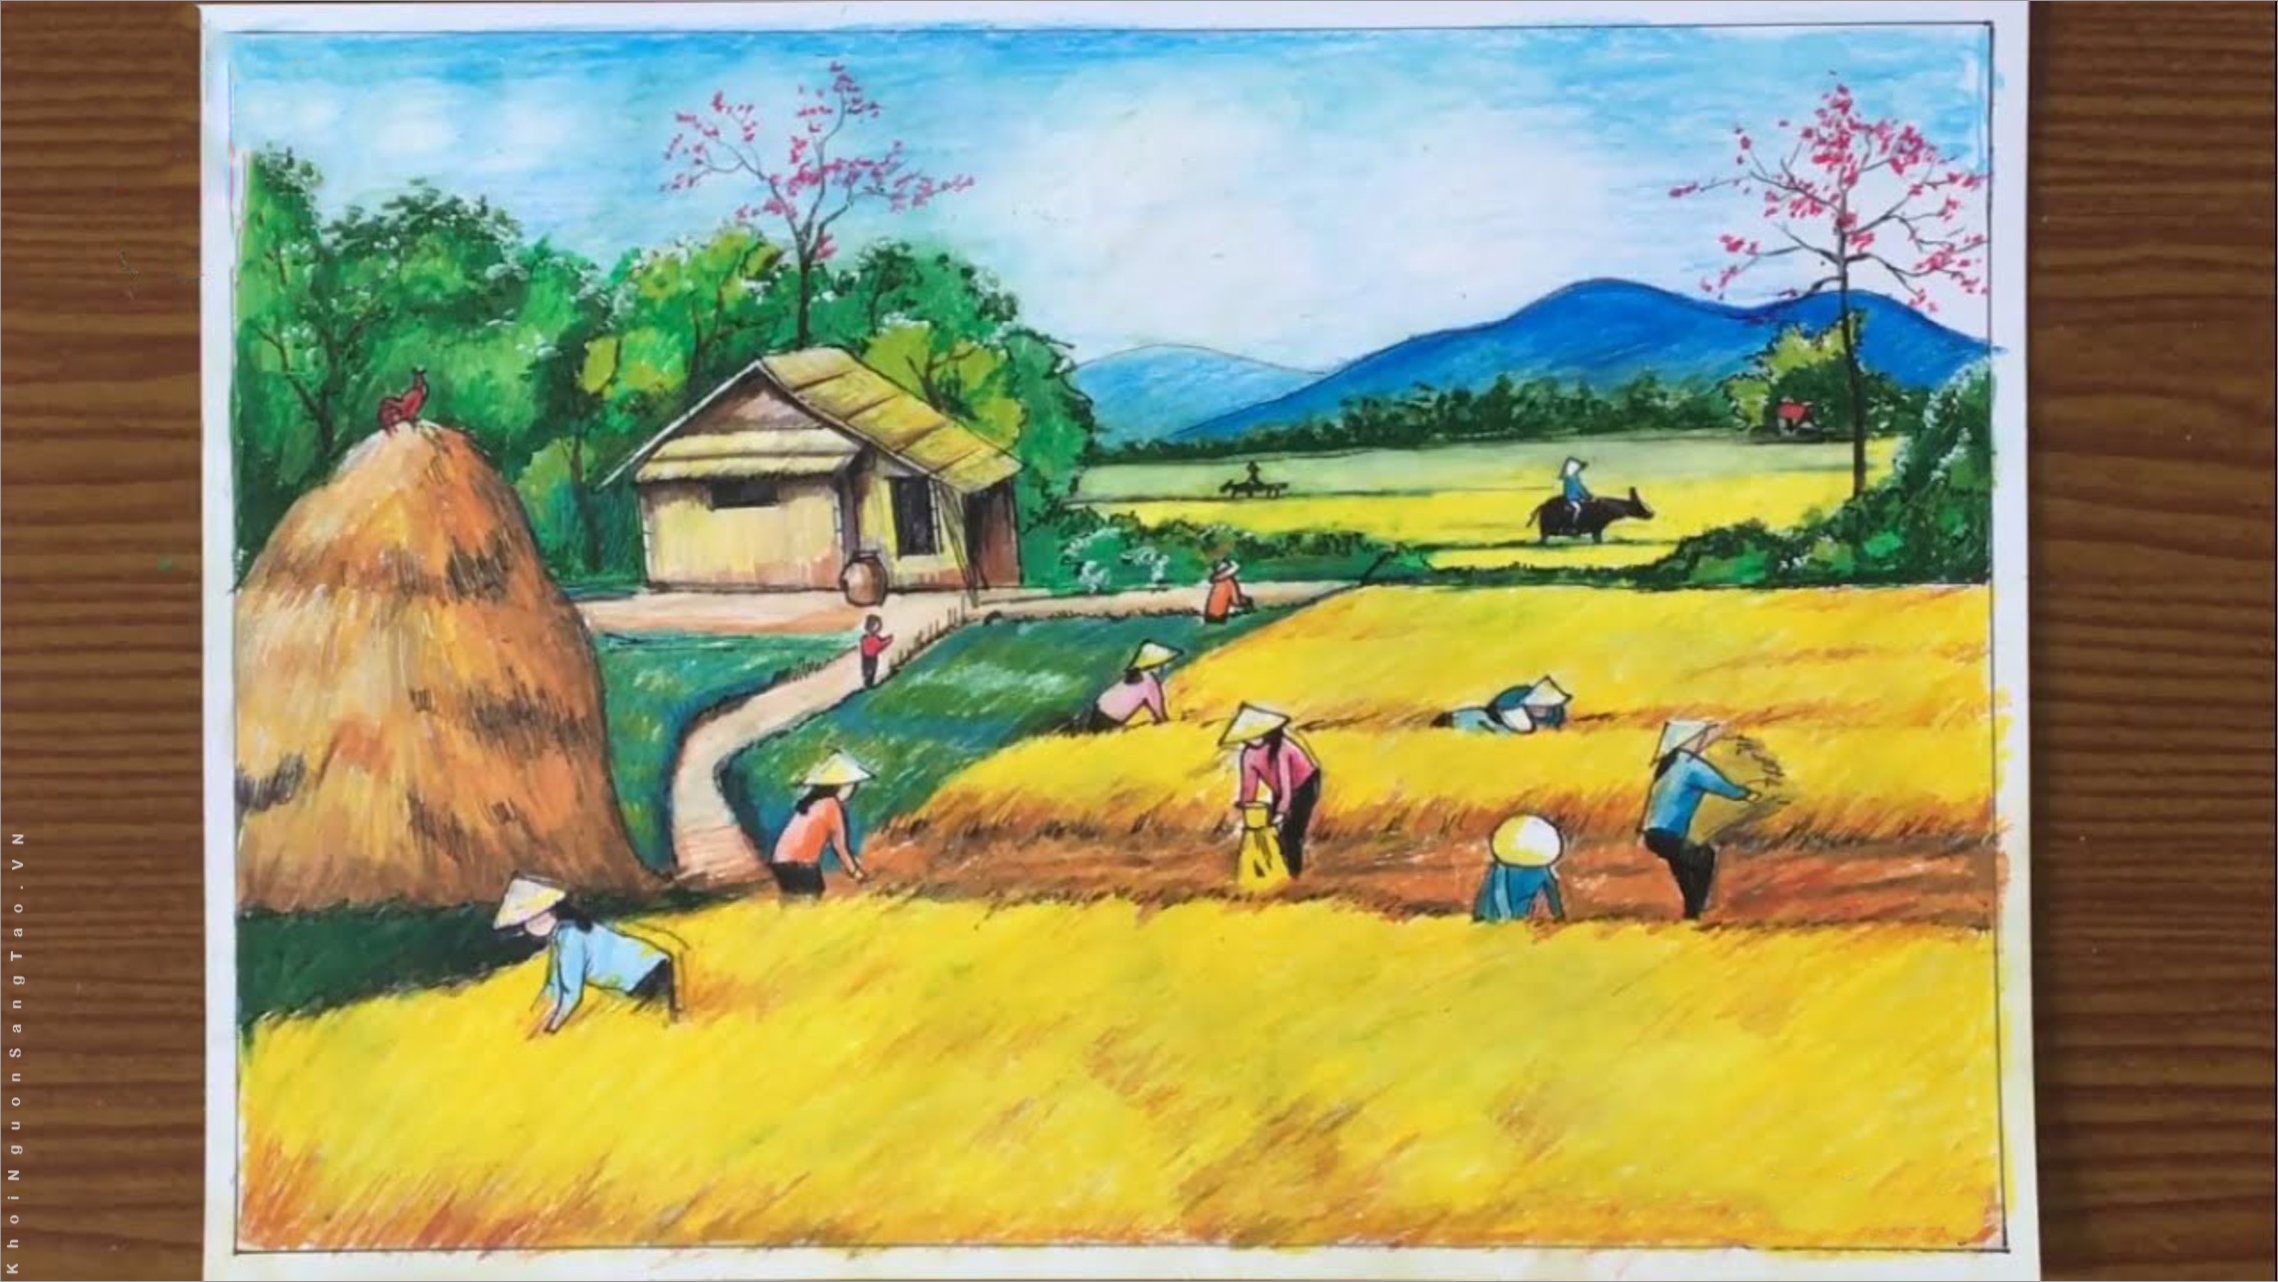 Vẽ tranh gặt lúa là một trong những chủ đề tranh phổ biến nhất liên quan đến nông nghiệp. Màu sắc rực rỡ và sự sinh động của bức tranh vẽ gặt lúa sẽ cho bạn cảm giác như đang được trải nghiệm trực tiếp quá trình thu hoạch lúa. Hãy để những bức tranh gặt lúa giúp bạn thư giãn và tận hưởng những giây phút yên bình.